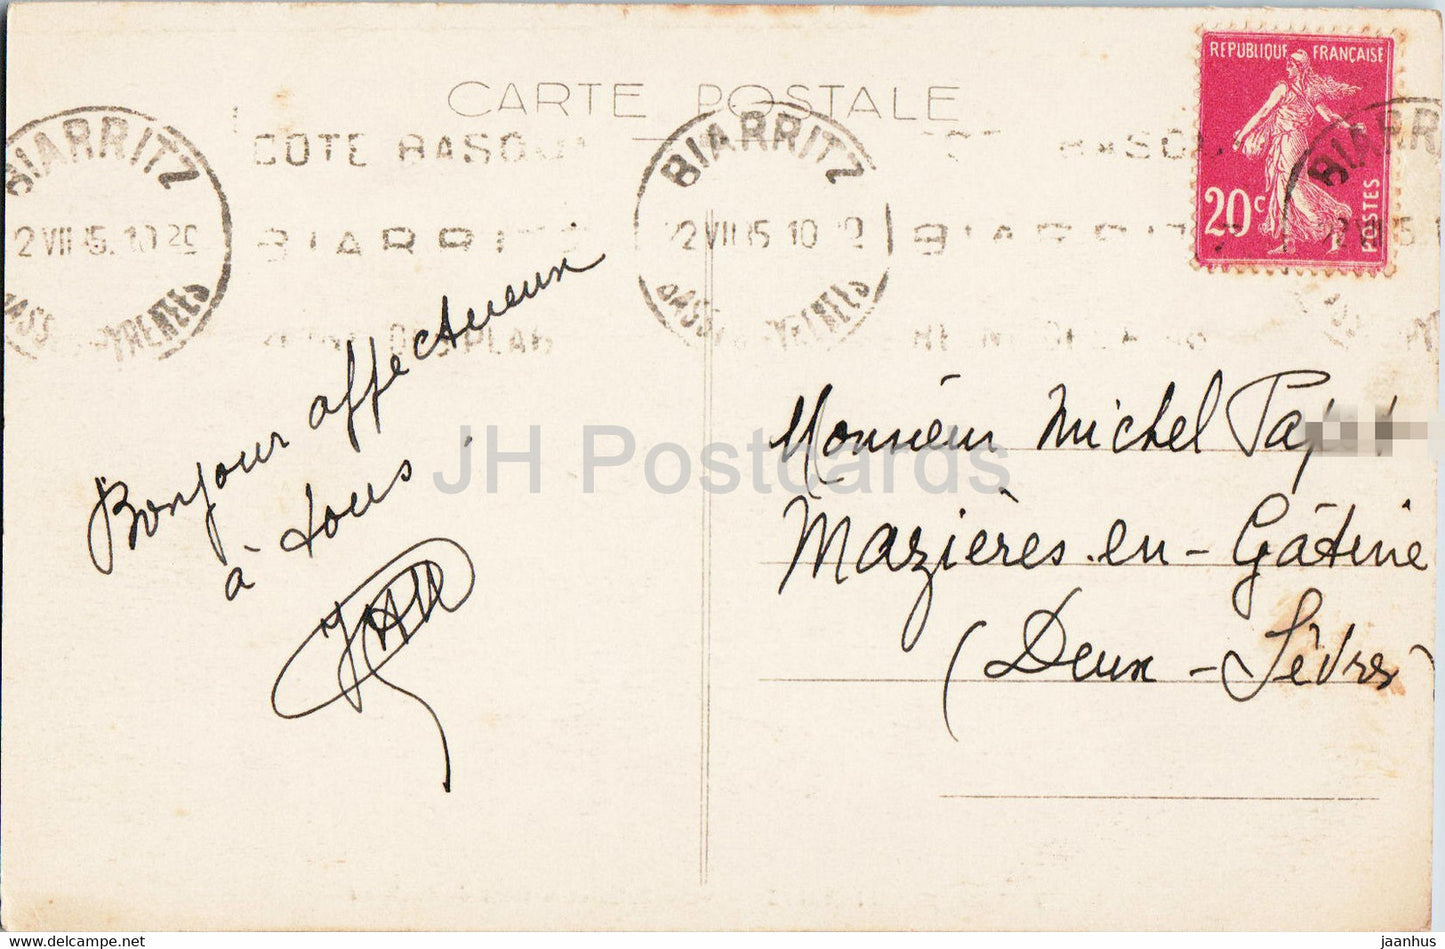 Biarritz - Villa Belza et la Dent du Cachaou - 19 - carte postale ancienne - 1935 - France - occasion